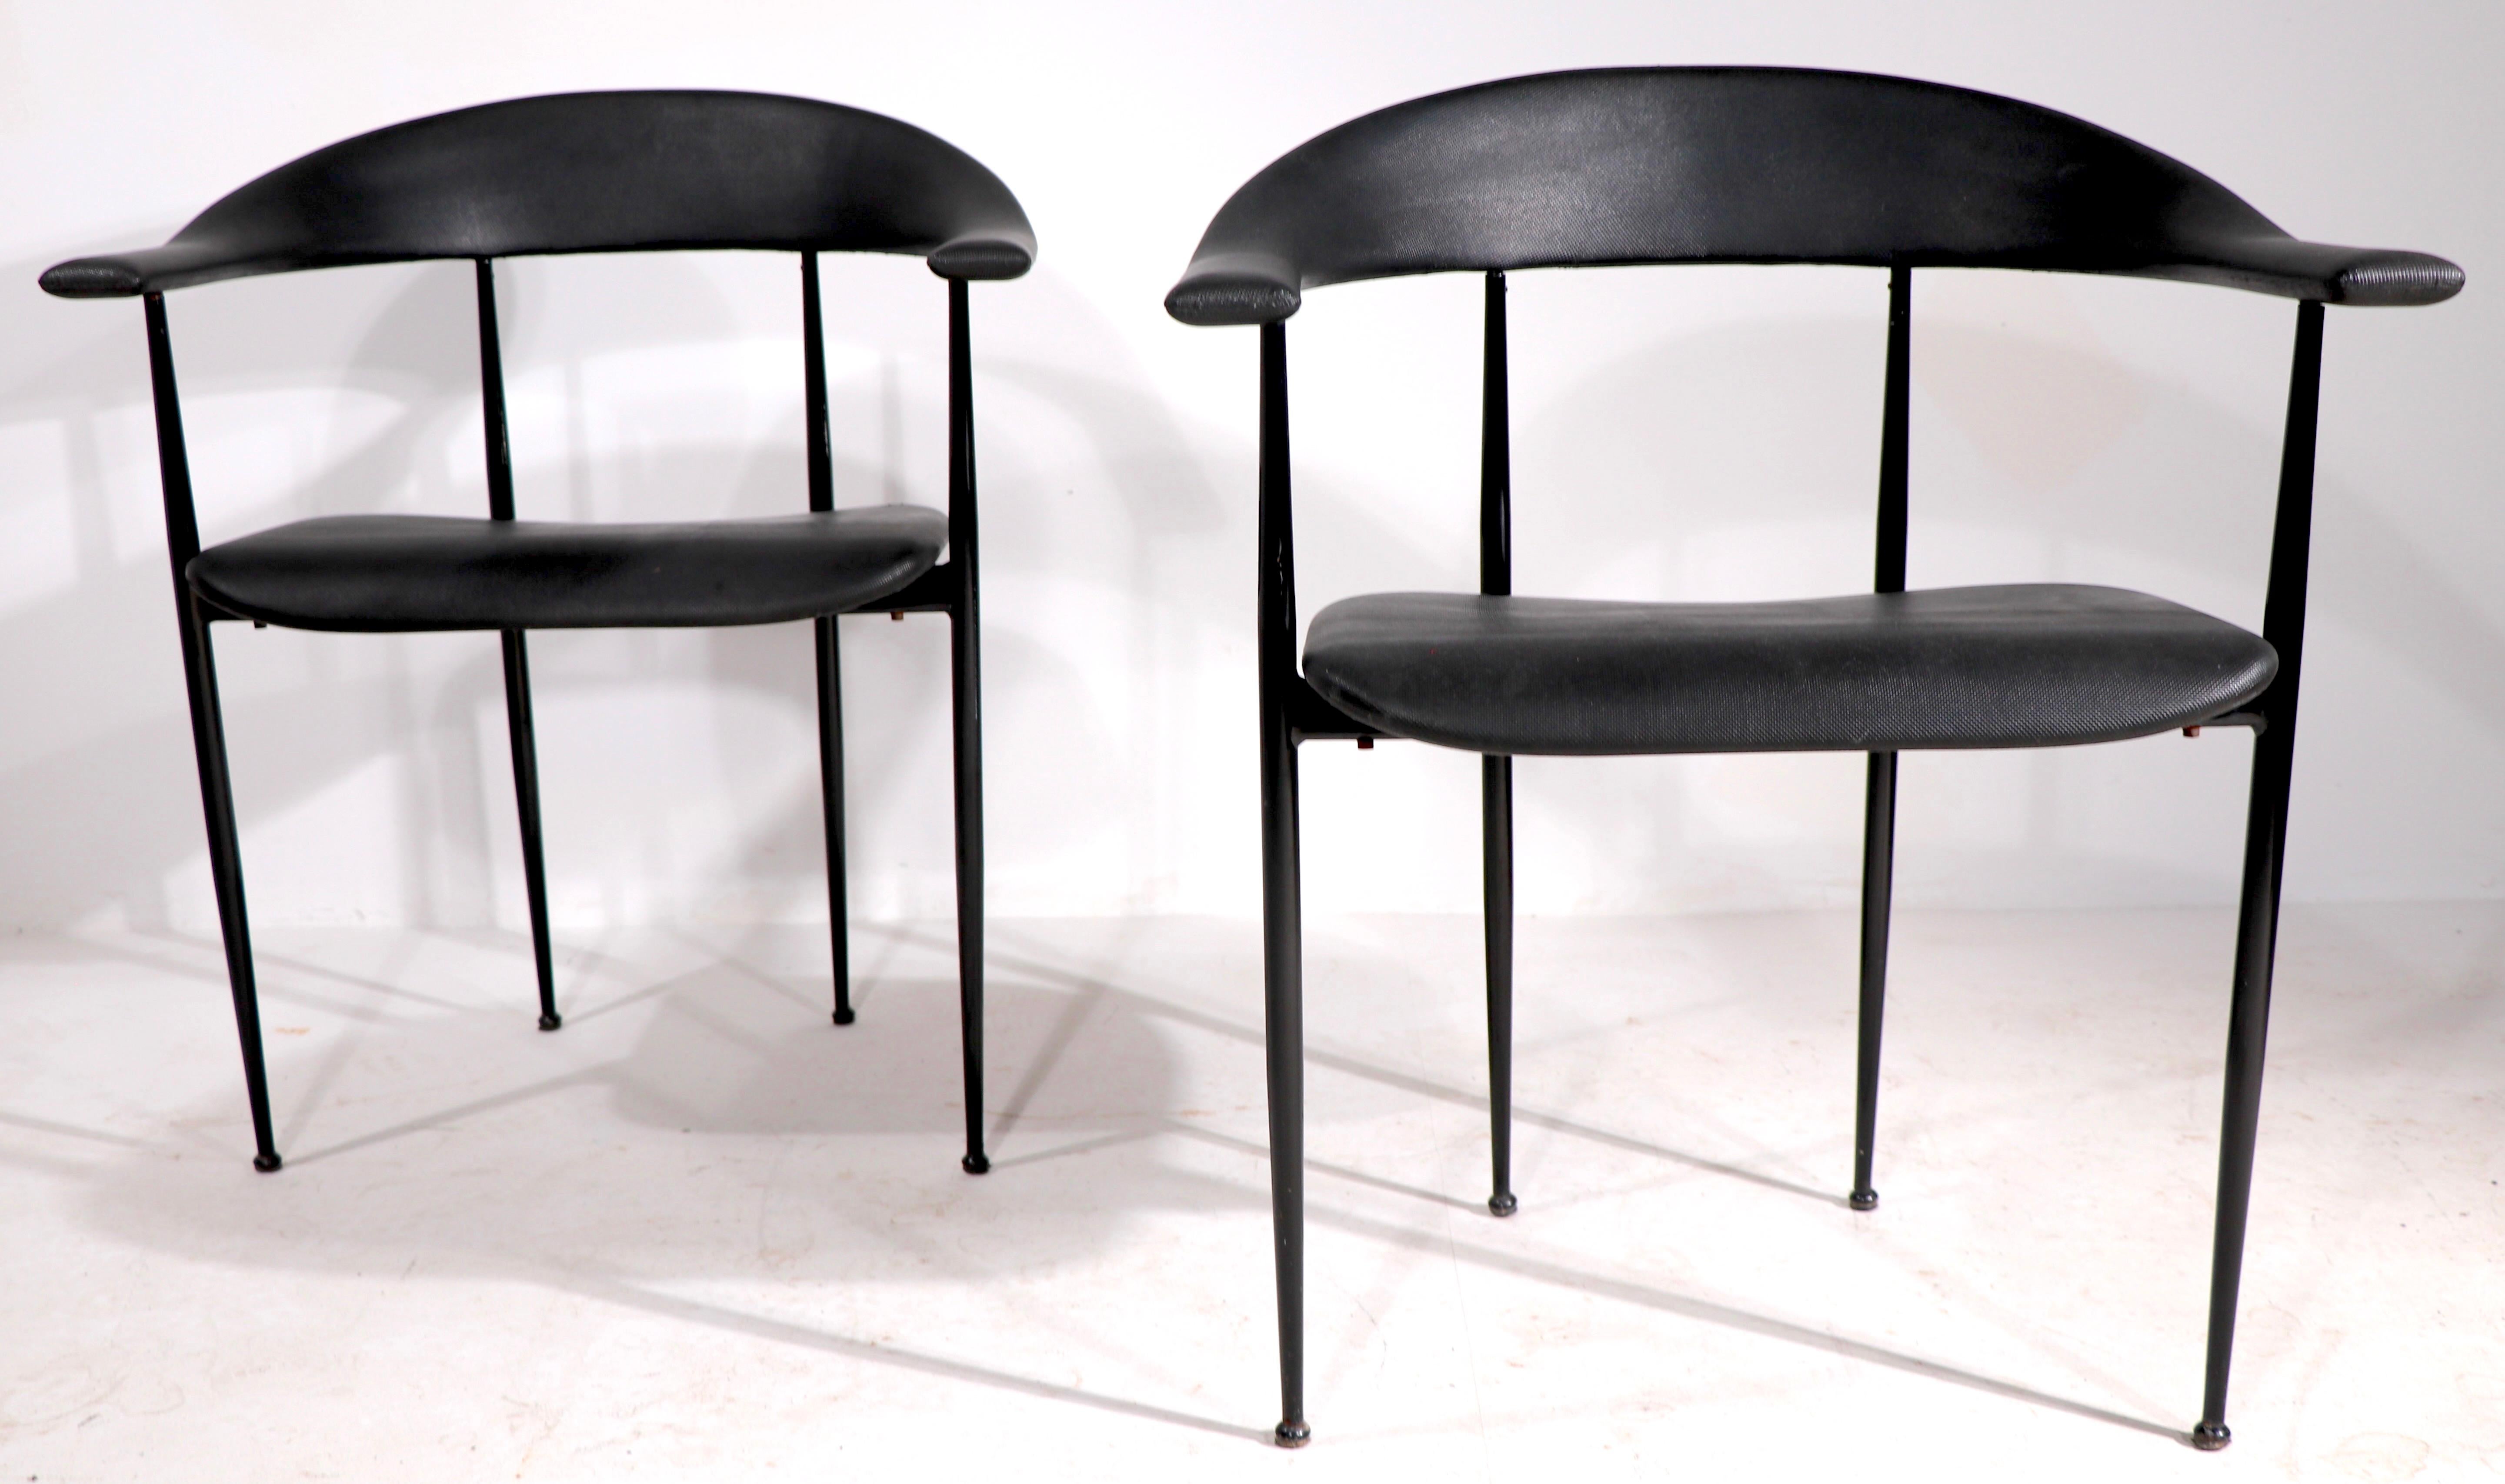 Paire élégante de chaises de design post-moderne, fabriquées en Italie, vendues par Conrans Habitat NYC dans les années 1990. Très bien, état original propre et prêt à l'emploi. Revêtement en caoutchouc texturé, sur des cadres en métal noir lisse.